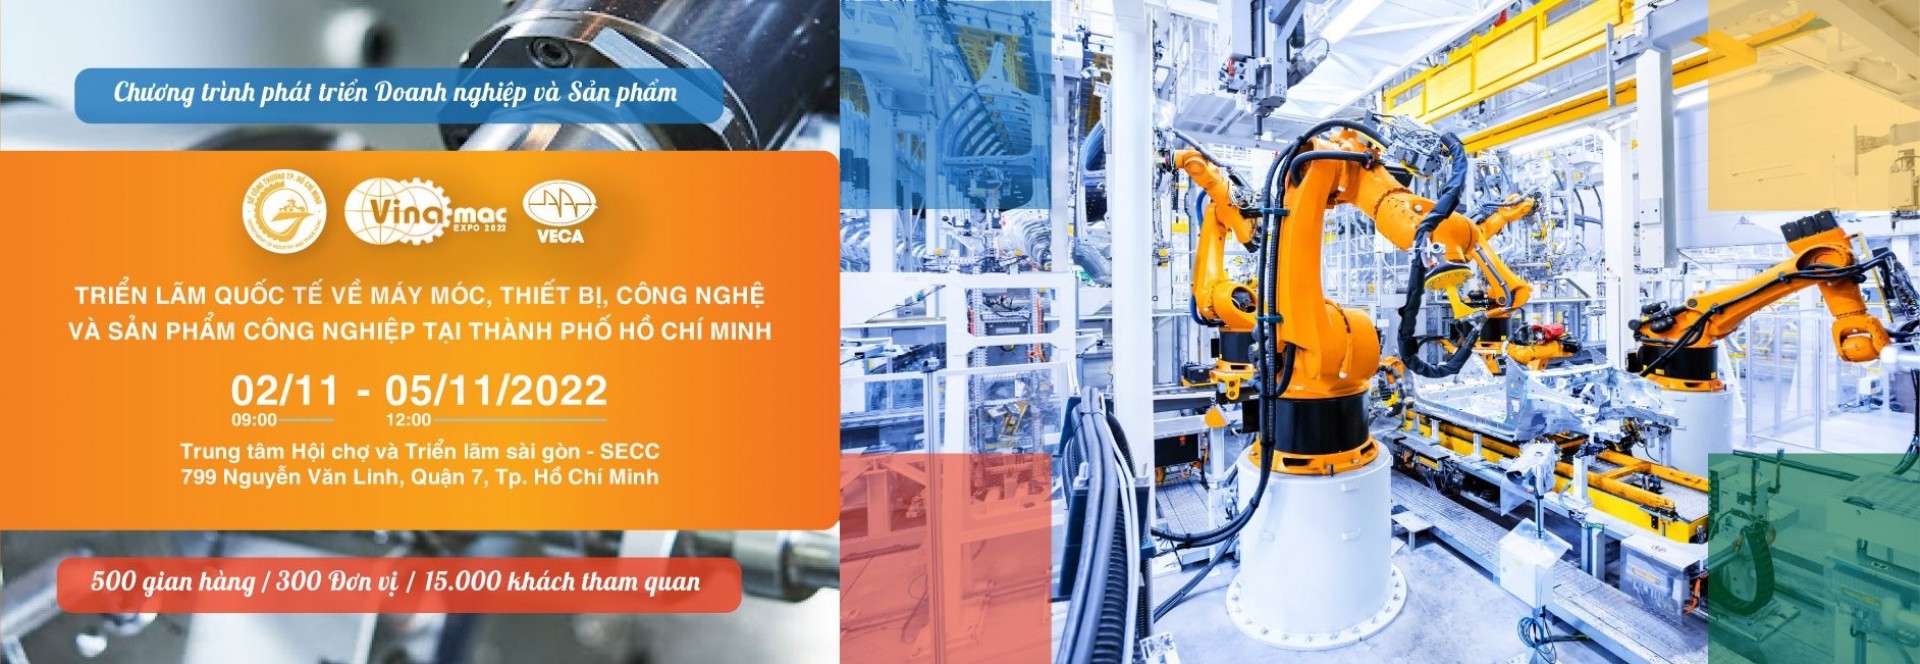 VINAMAC EXPO 2022 - Triển lãm Quốc tế về Máy móc, Thiết bị, Công nghệ và Sản phẩm Công nghiệp tại TP.HCM